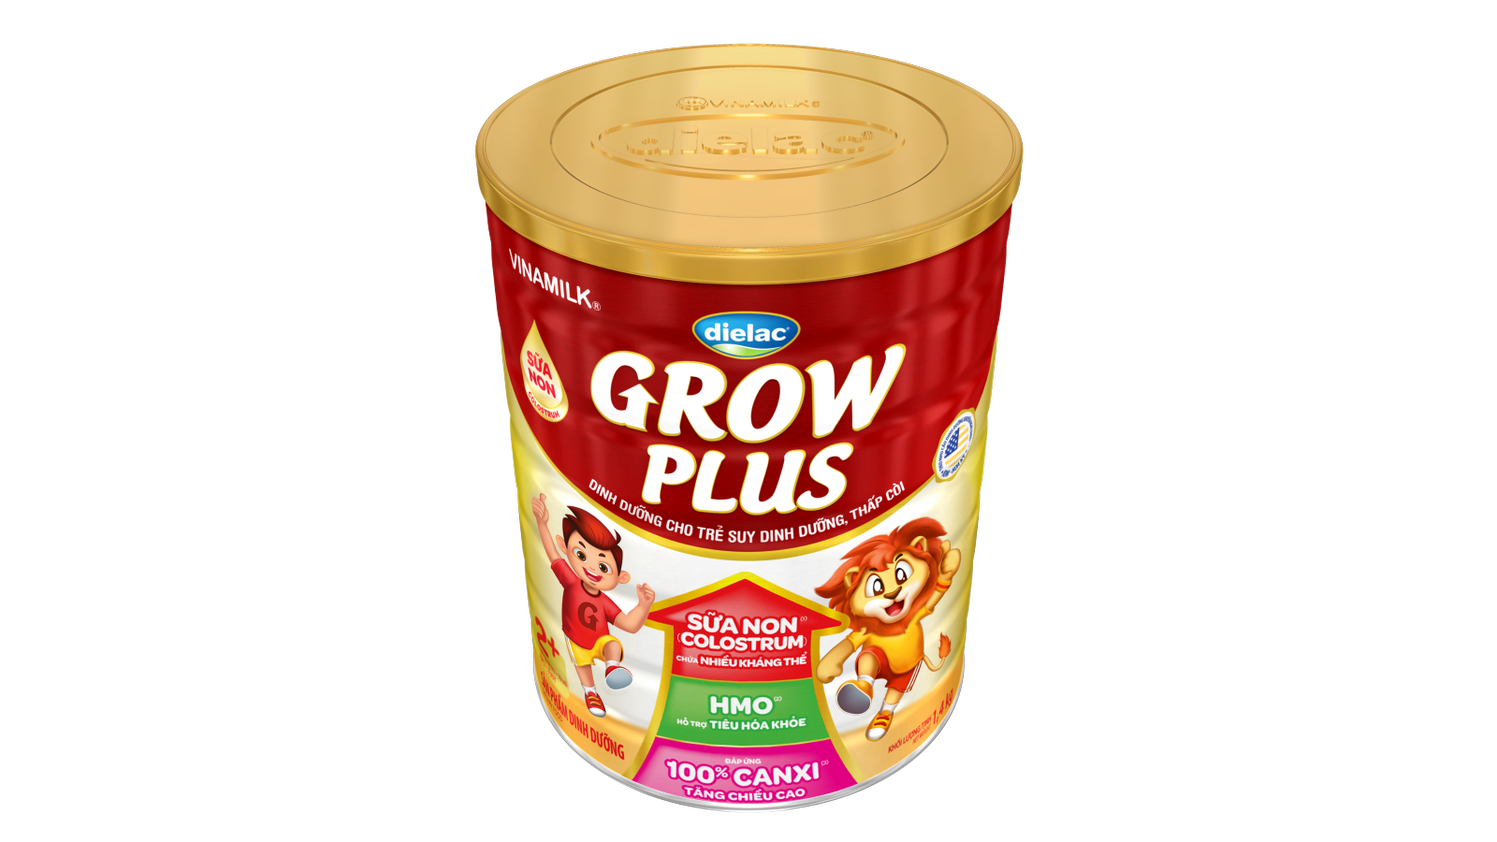 Sữa Non Vinamilk Dielac Grow Plus 2+ HT 1400g (Sữa bột Cho Trẻ Từ 2 - 10 Tuổi) -Tăng cân cao khỏe, hỗ trợ Trẻ suy dinh dưỡng, thấp còi